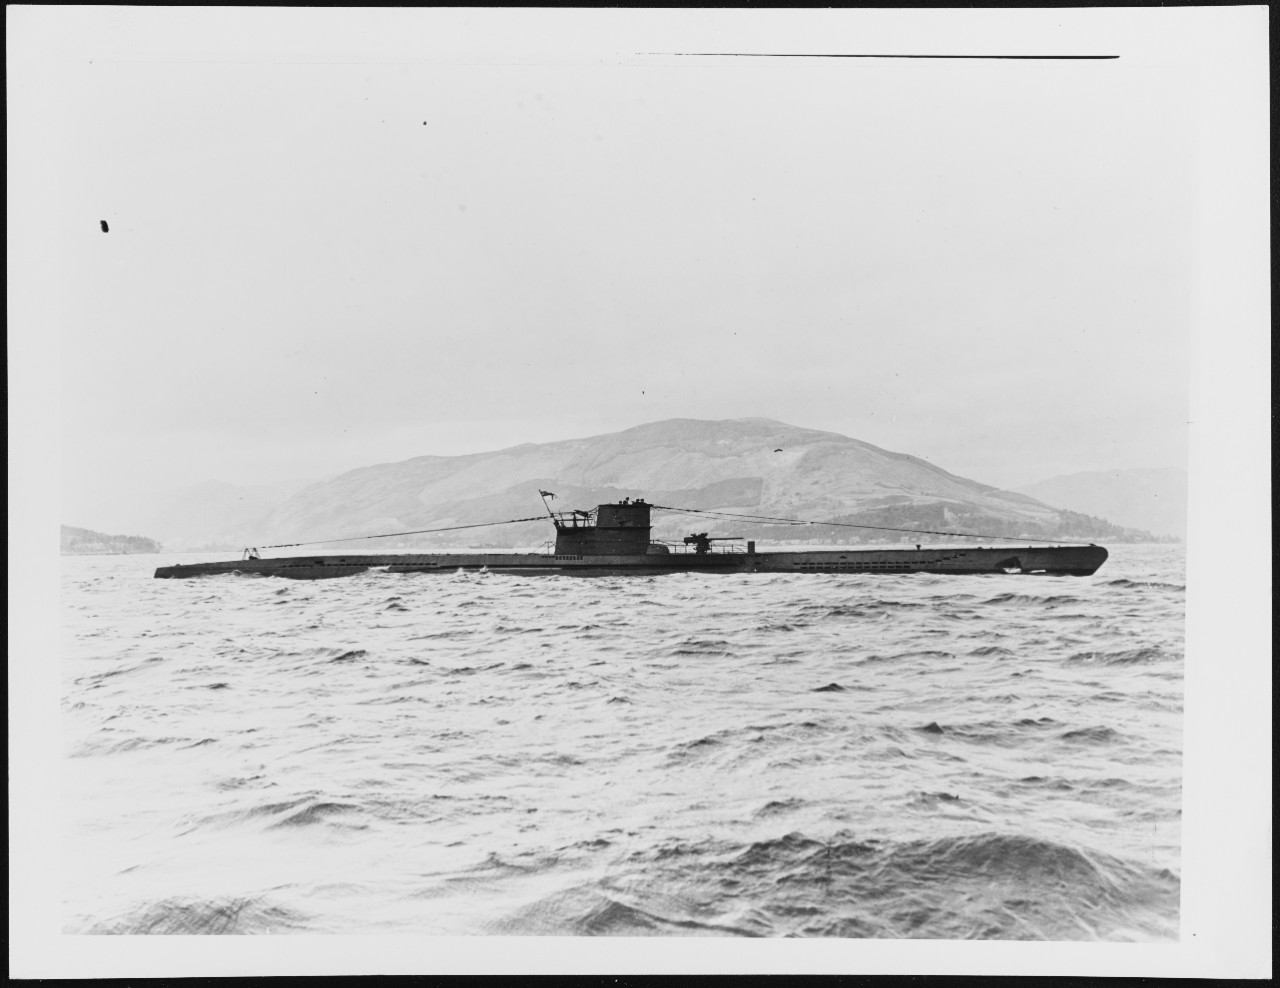 HMS GRAPH (ex-German U-570)